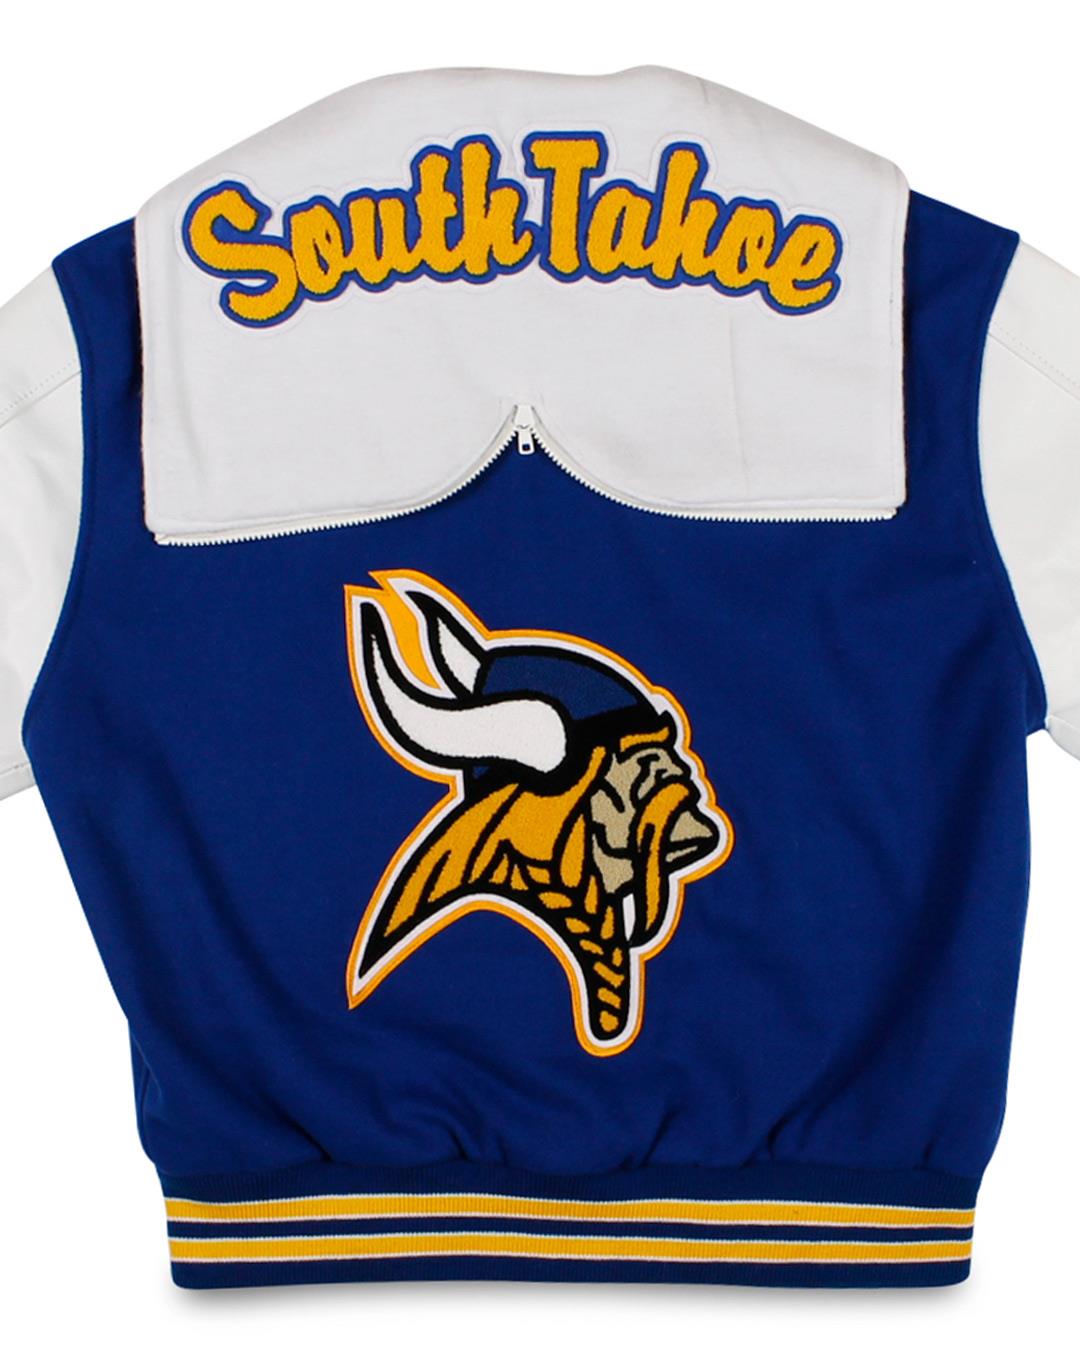 South Tahoe High School Varsity Jacket, South Lake Tahoe CA - Back